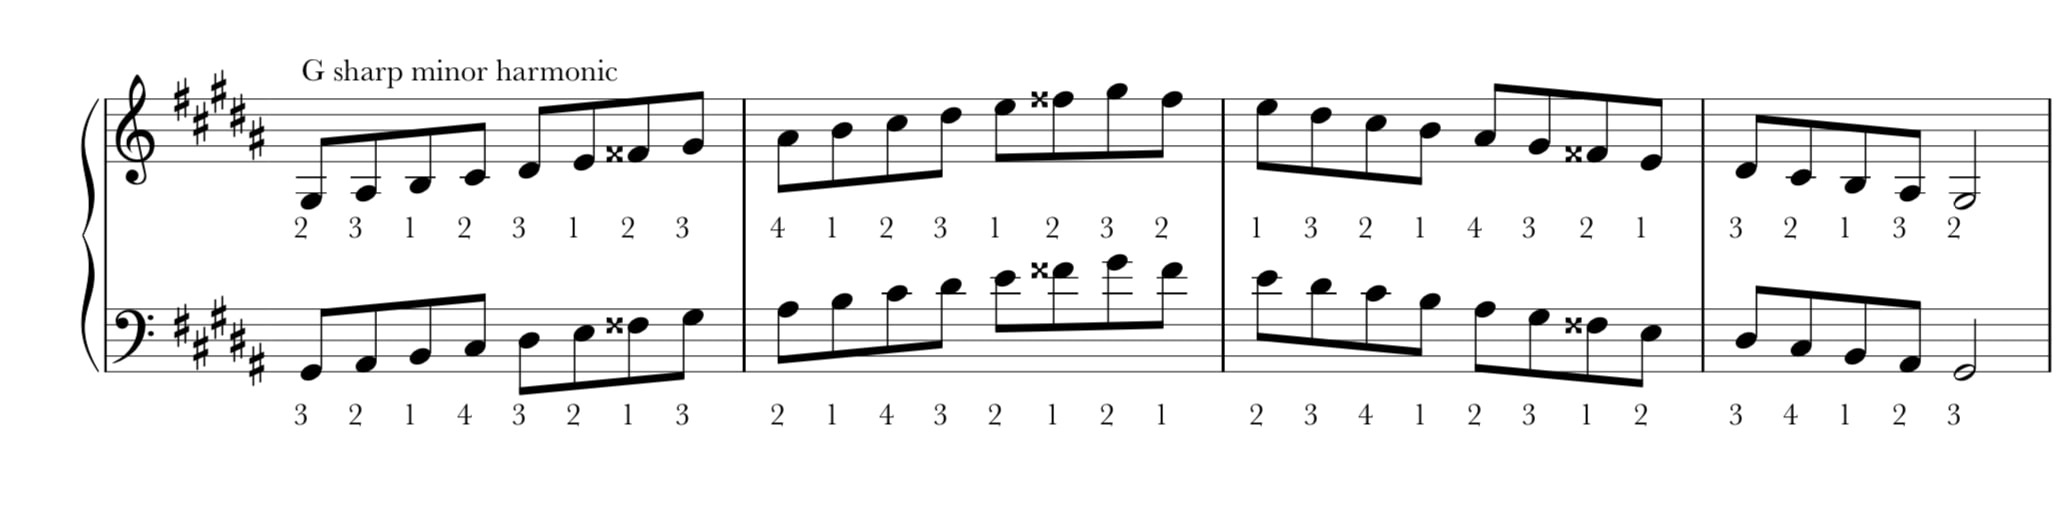 G sharp harmonic minor scale